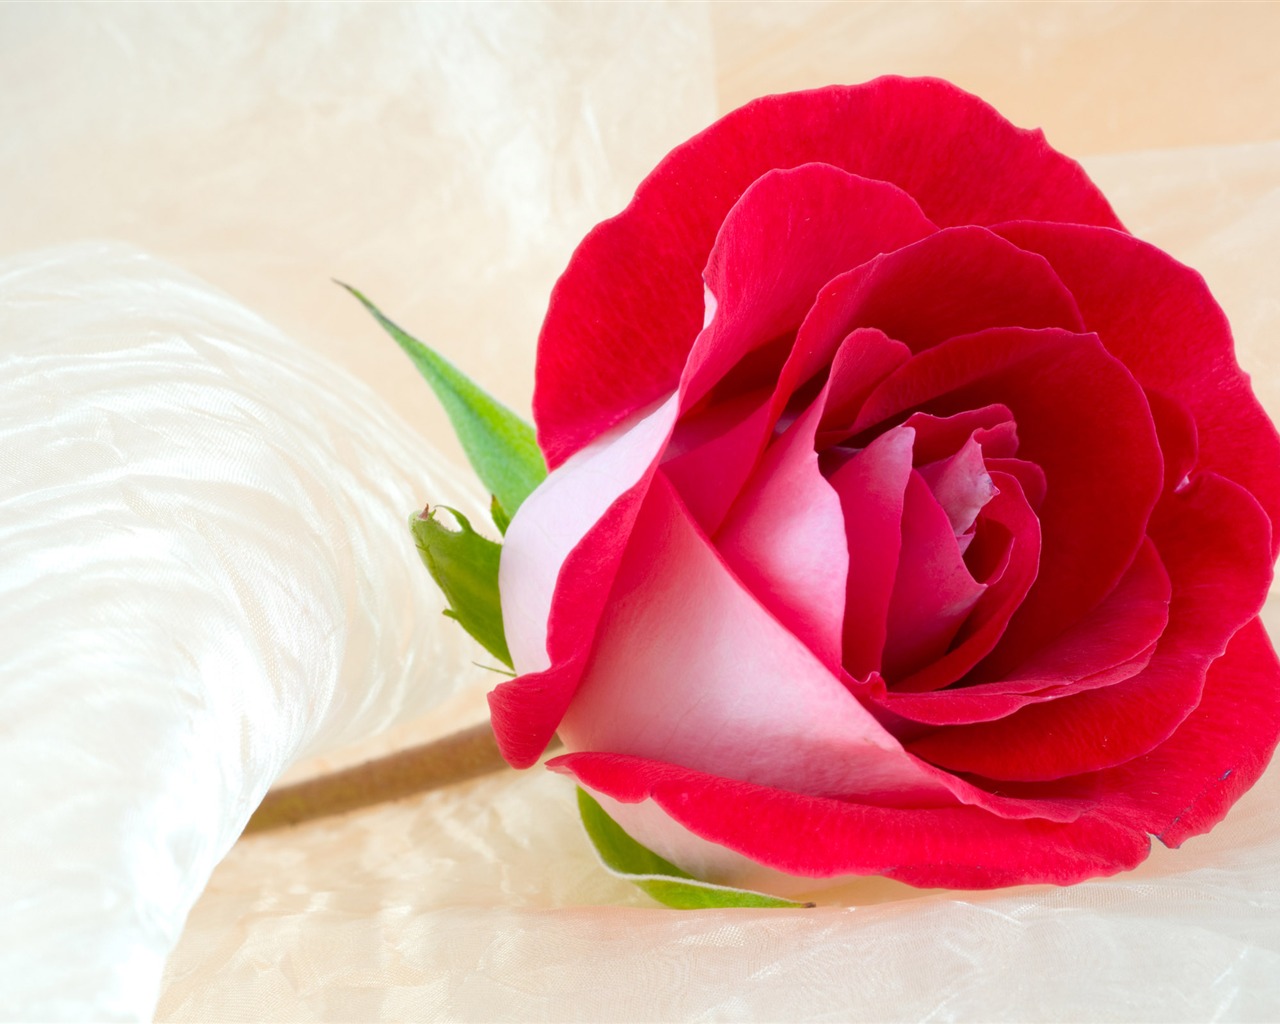 Gran Rose Fondos de Fotografía (3) #1 - 1280x1024